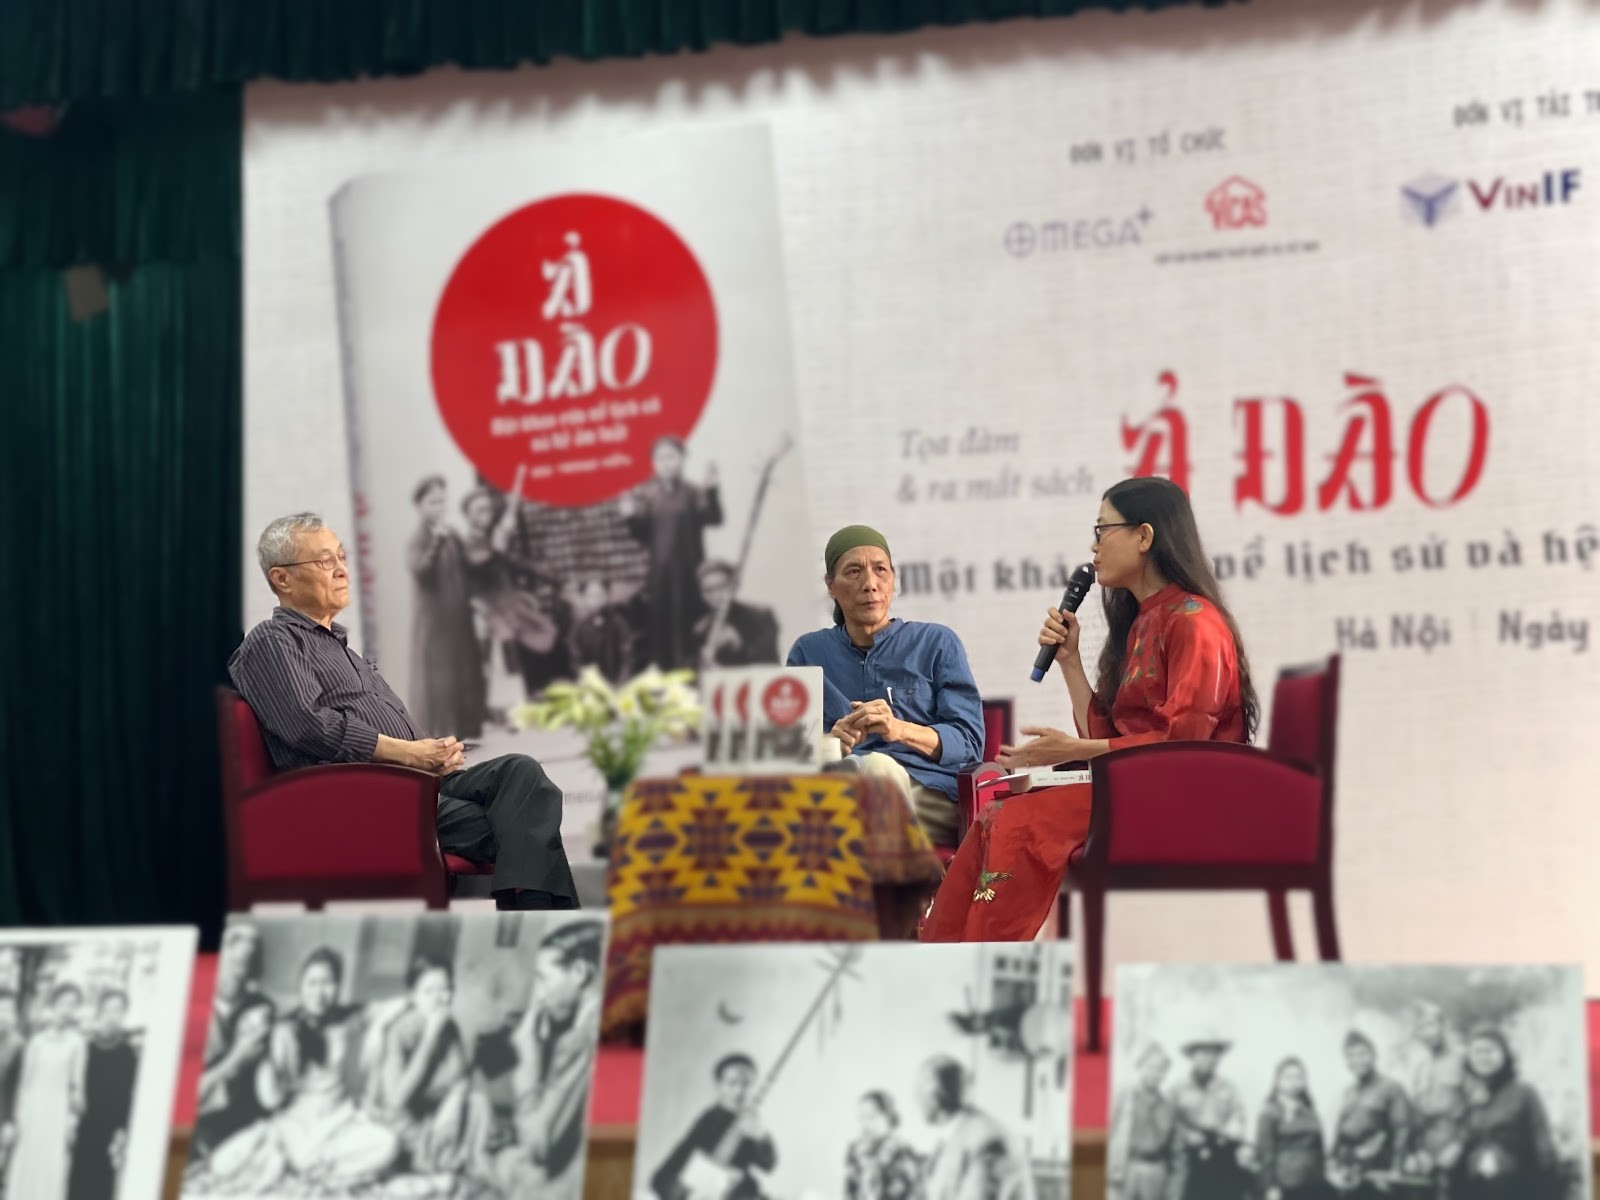 Tác giả Bùi Trọng Hiền (giữa) và nhà nghiên cứu Đặng Hoành Loan chia sẻ về giá trị lịch sử, nghệ thuật của ca trù